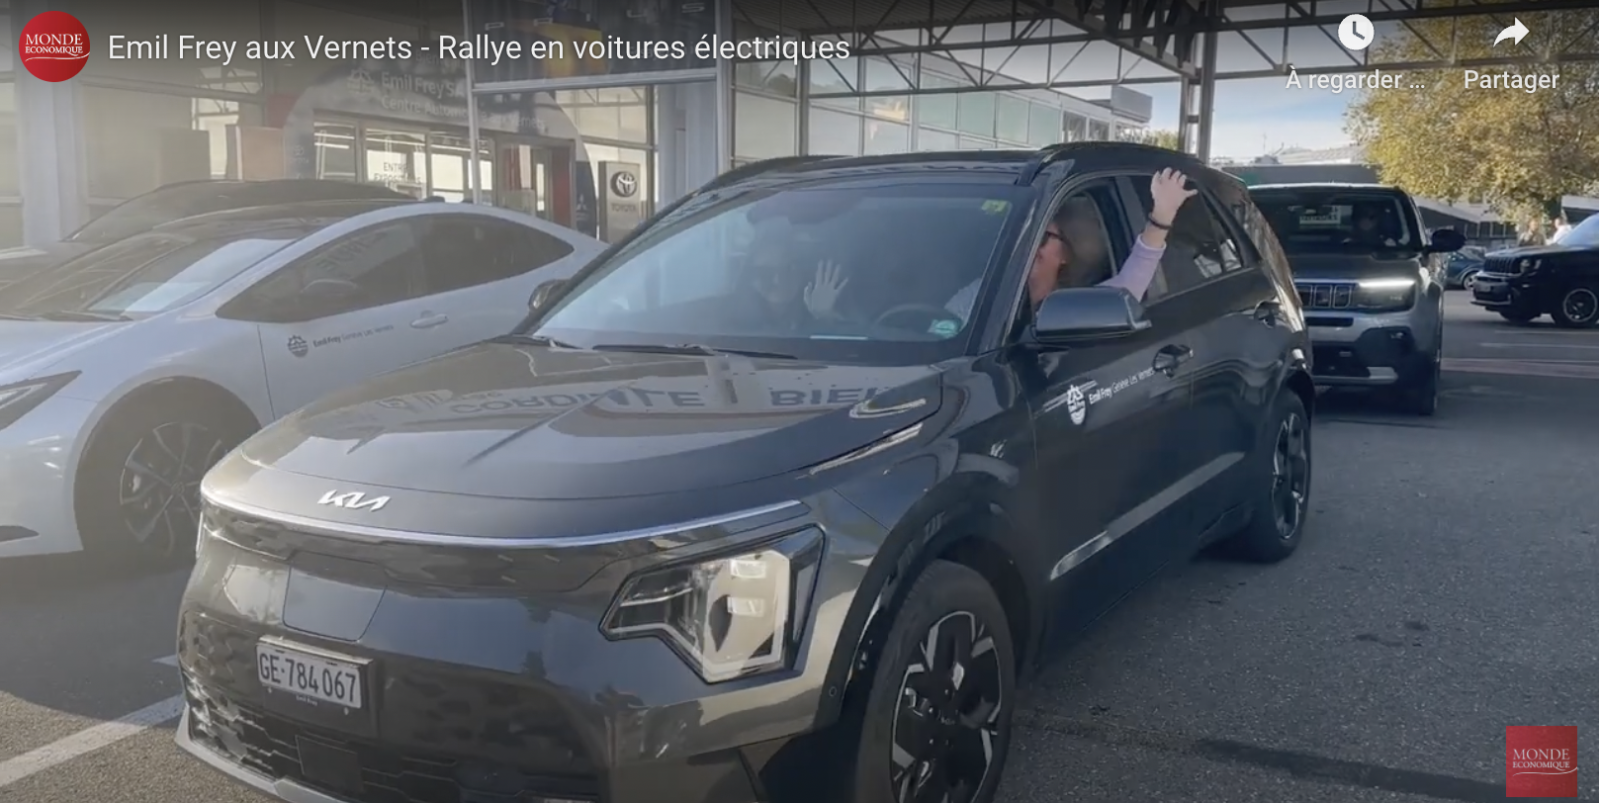 Emil Frey aux Vernets – Rallye en voitures électriques